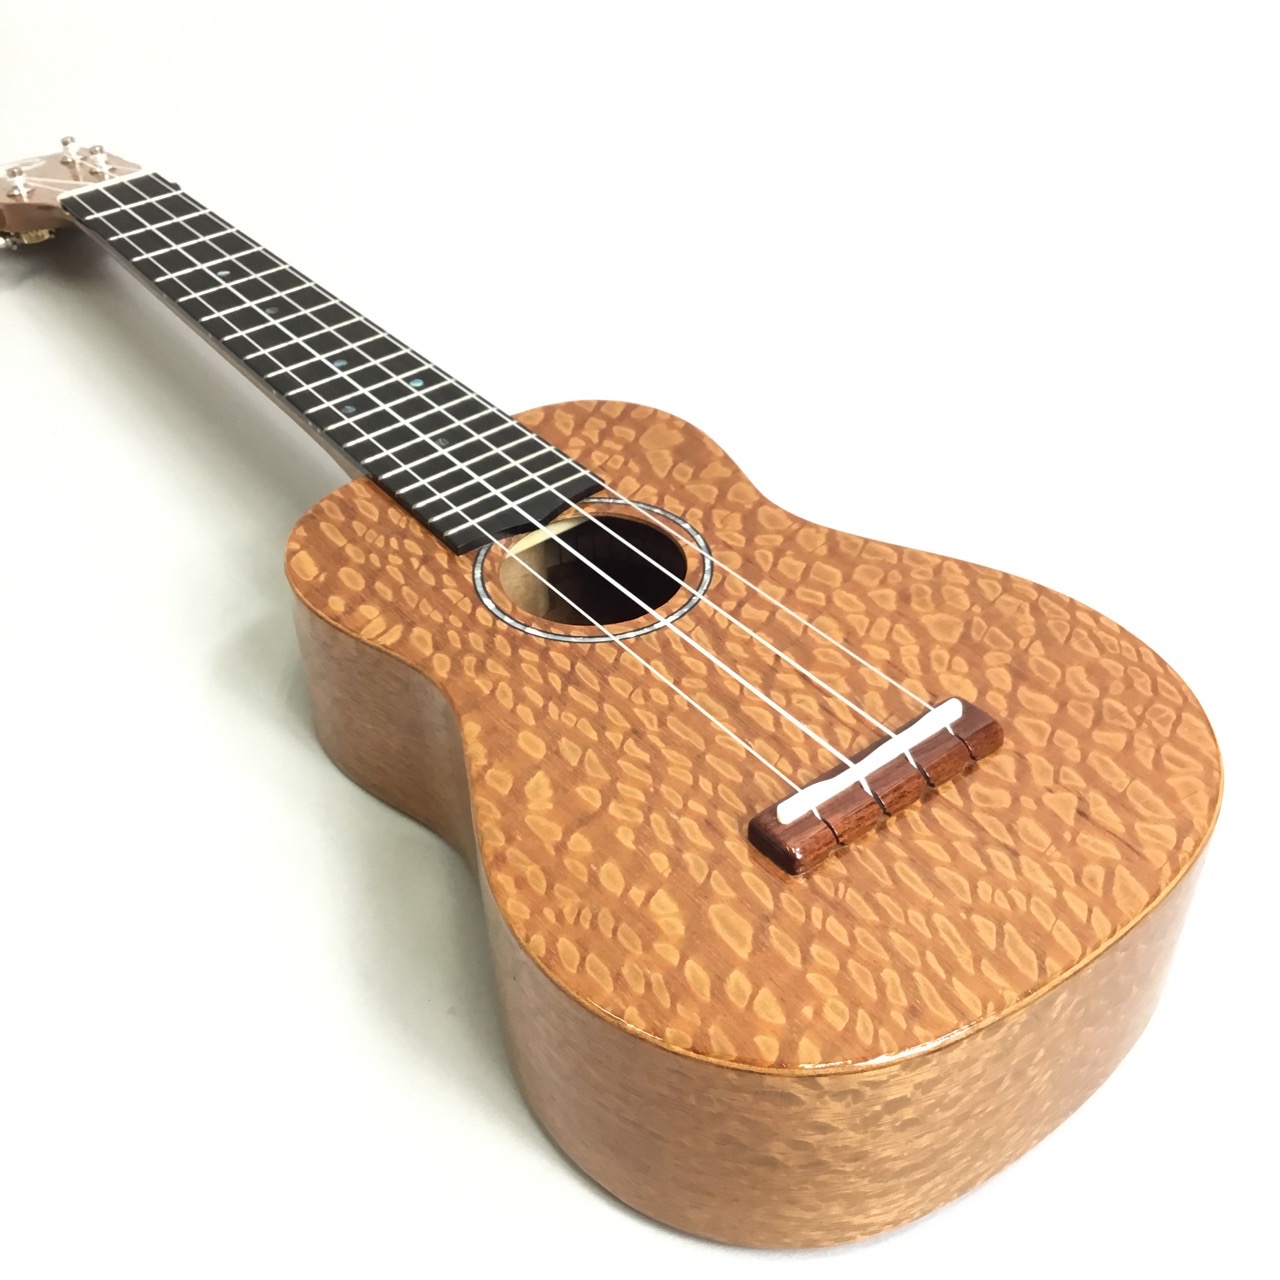 COTONE(コトネ)とは 年々、希少な資源になっていく世界中の「トーンウッド」と言われる木材を使い、世界的にも弦楽器製造に定評のある日本国内で丁寧に制作された、島村楽器のオリジナルブランドです。 また使用木材を「ハワイアンコア・マホガニー」などのウクレレの定番材にこだわらず、伝統的なスタイルを残し […]